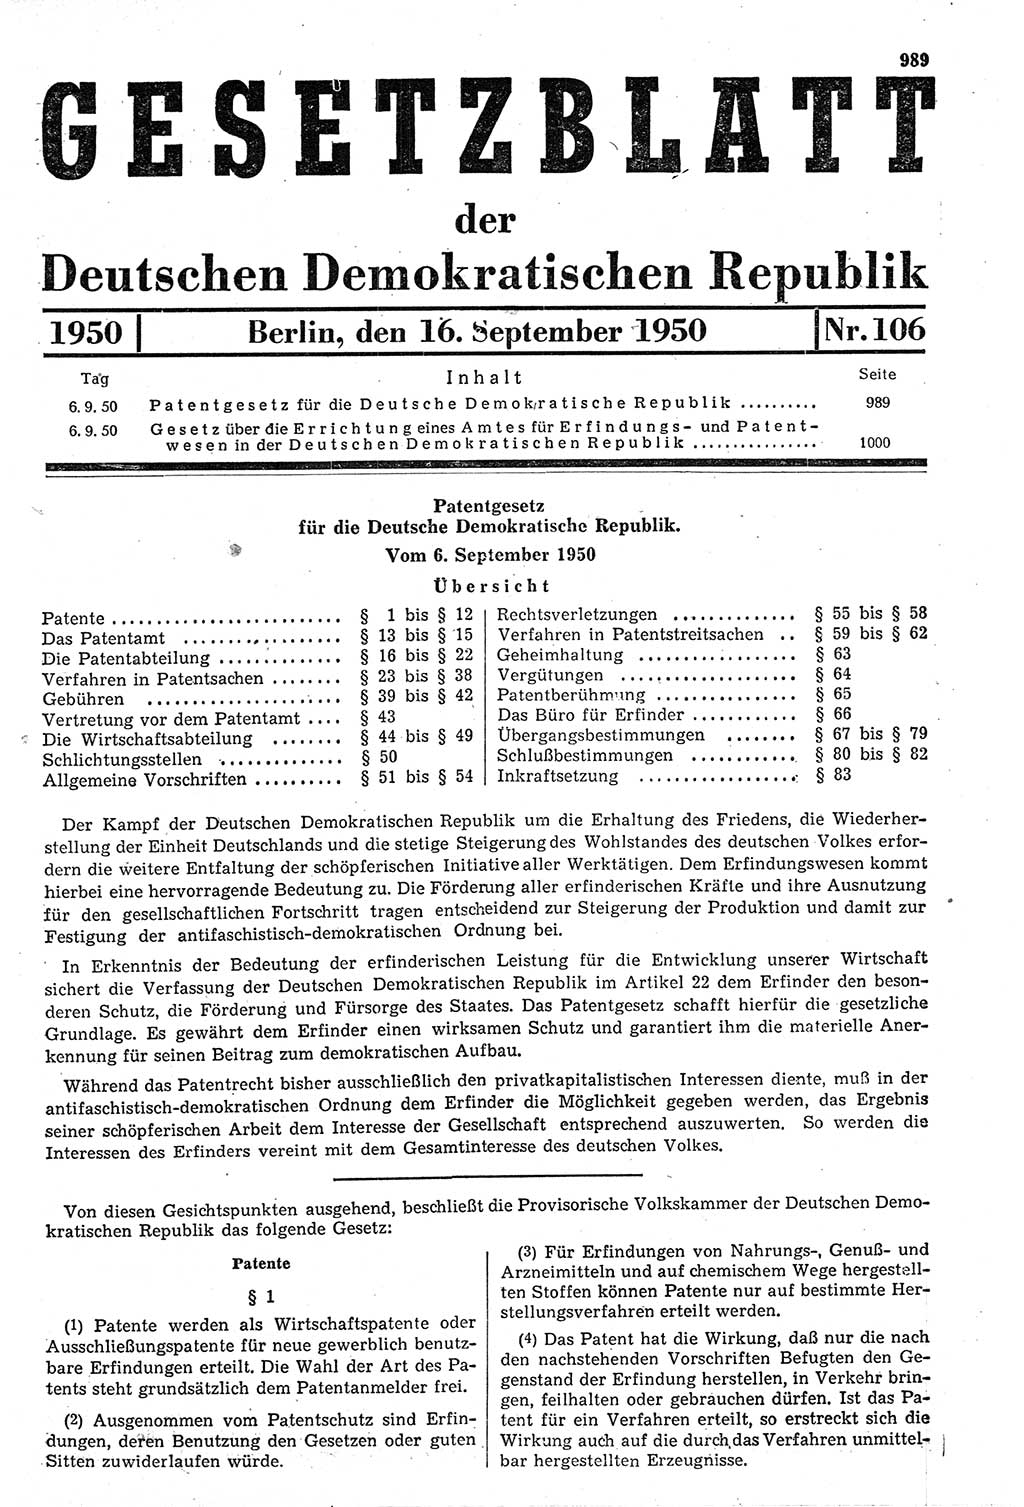 Gesetzblatt (GBl.) der Deutschen Demokratischen Republik (DDR) 1950, Seite 989 (GBl. DDR 1950, S. 989)